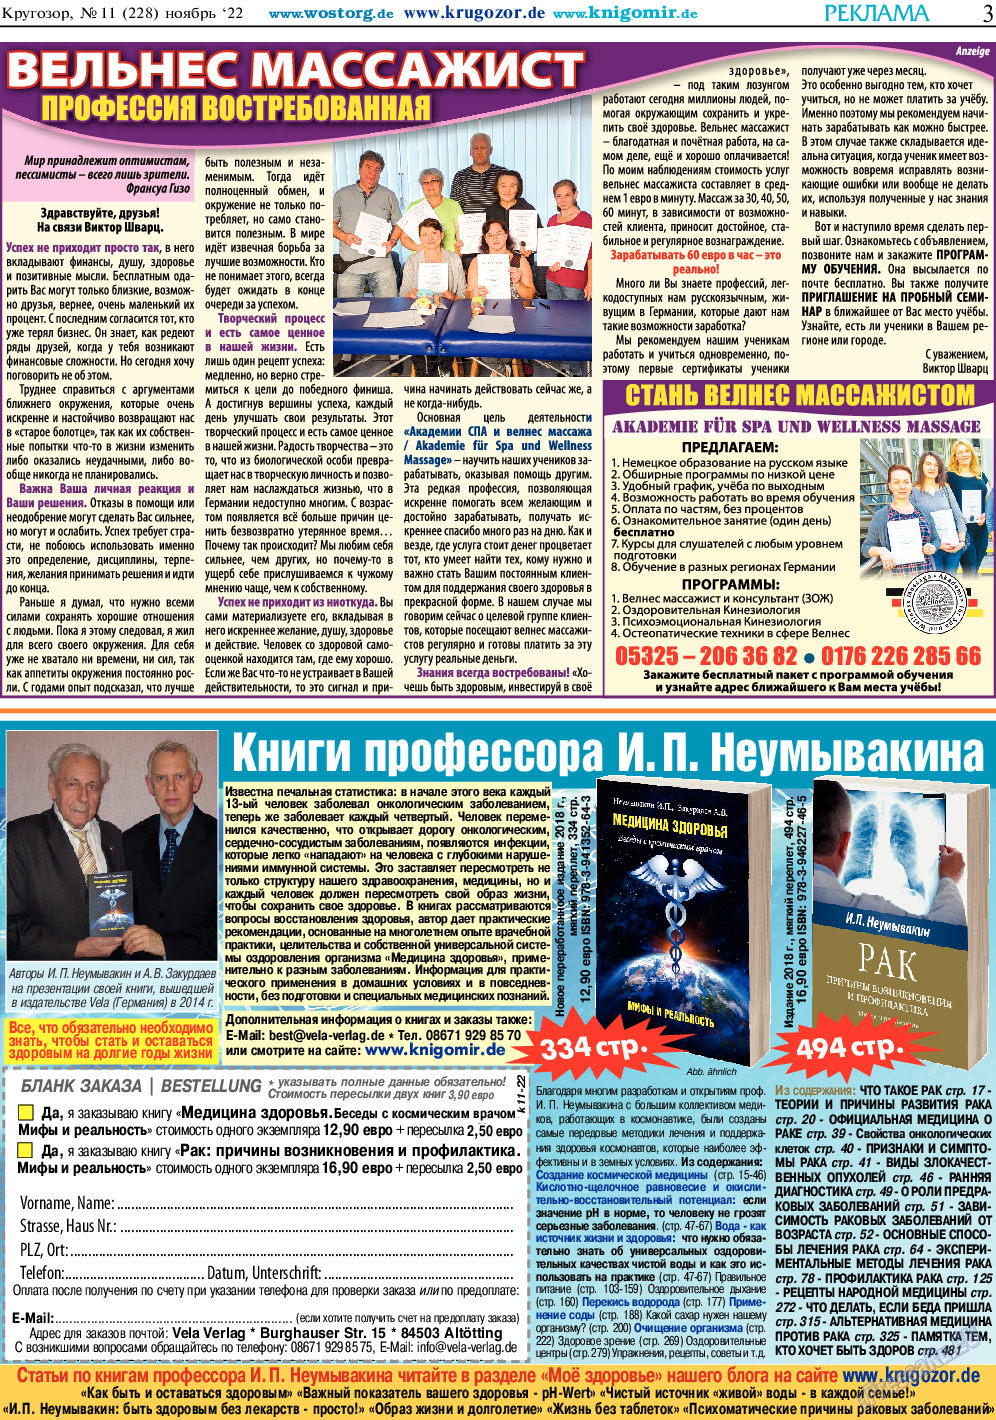 Кругозор, газета. 2022 №11 стр.3